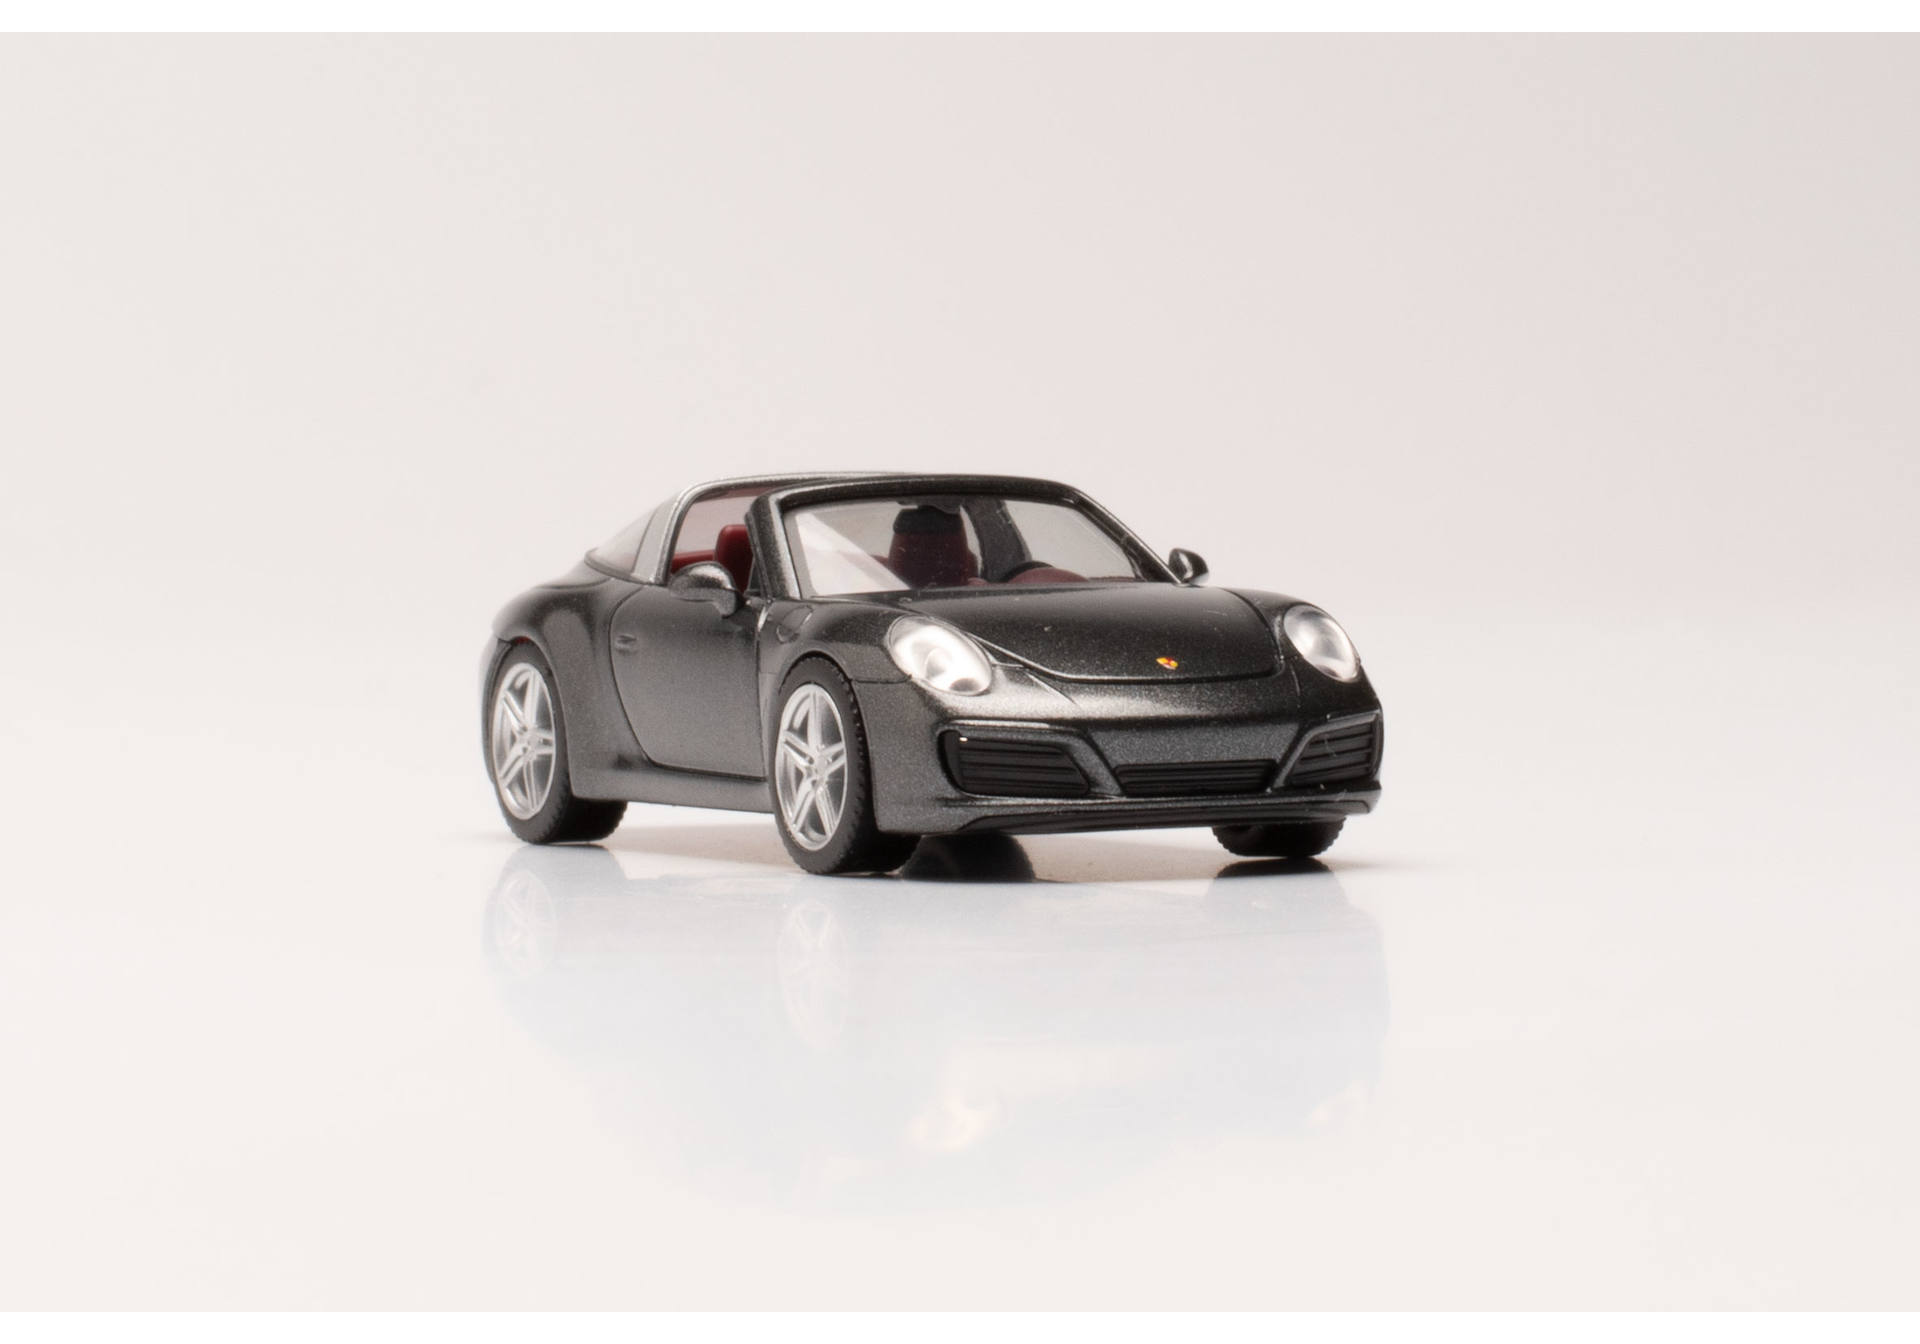 Porsche 911 Targa 4, acagate grey metallic